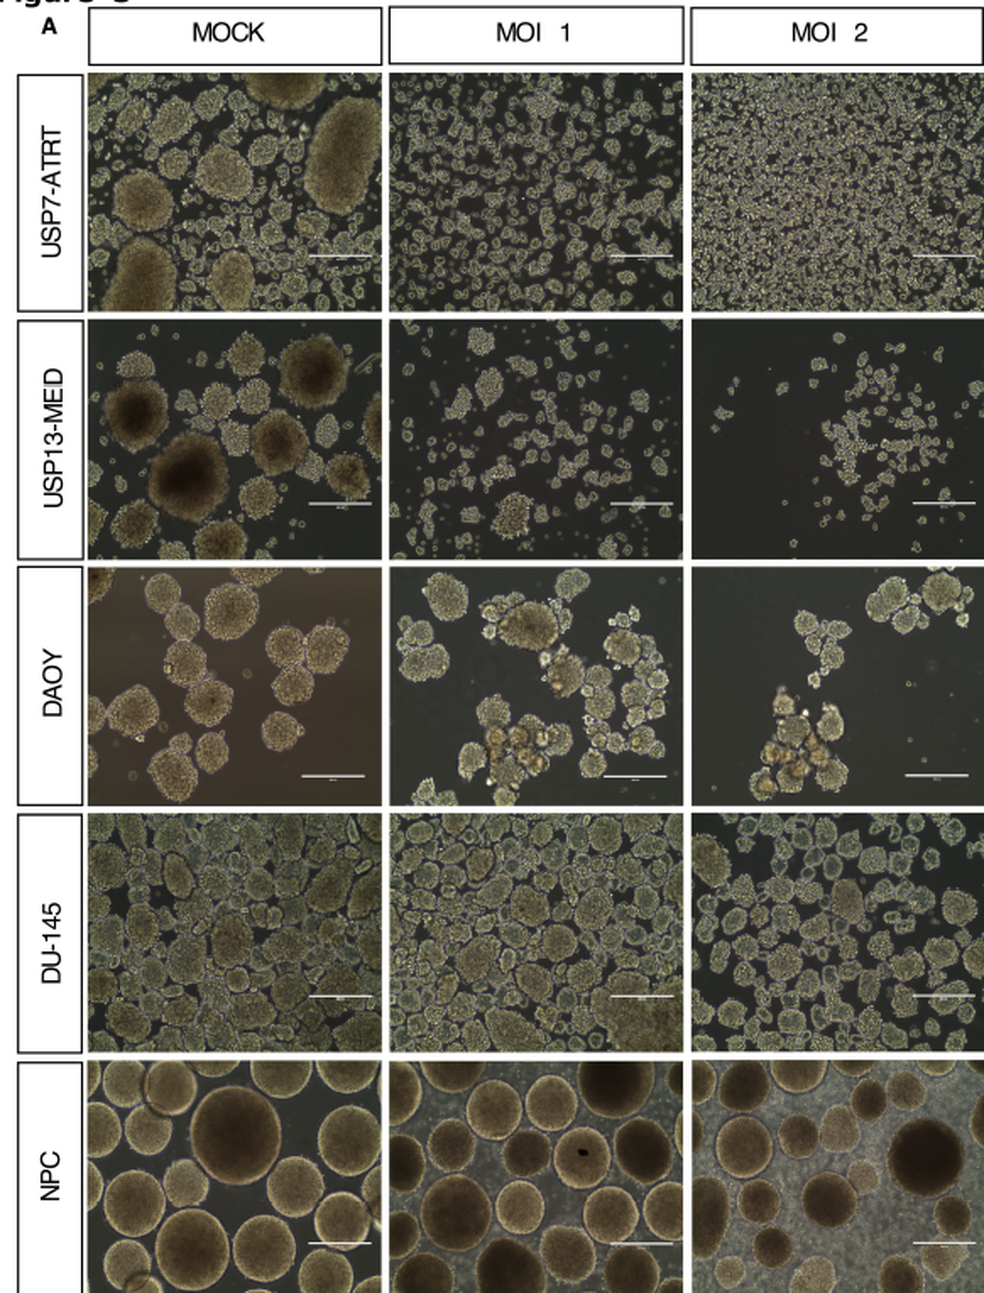 Imagem retirada do estudo mostra a ação do zika sobre células do tumor. As imagens mais à esquerda vão mostrando a ação do zika progressivamente. O vírus vai desorganizando as esferas das células tumorais  (Foto: Kaid et al)